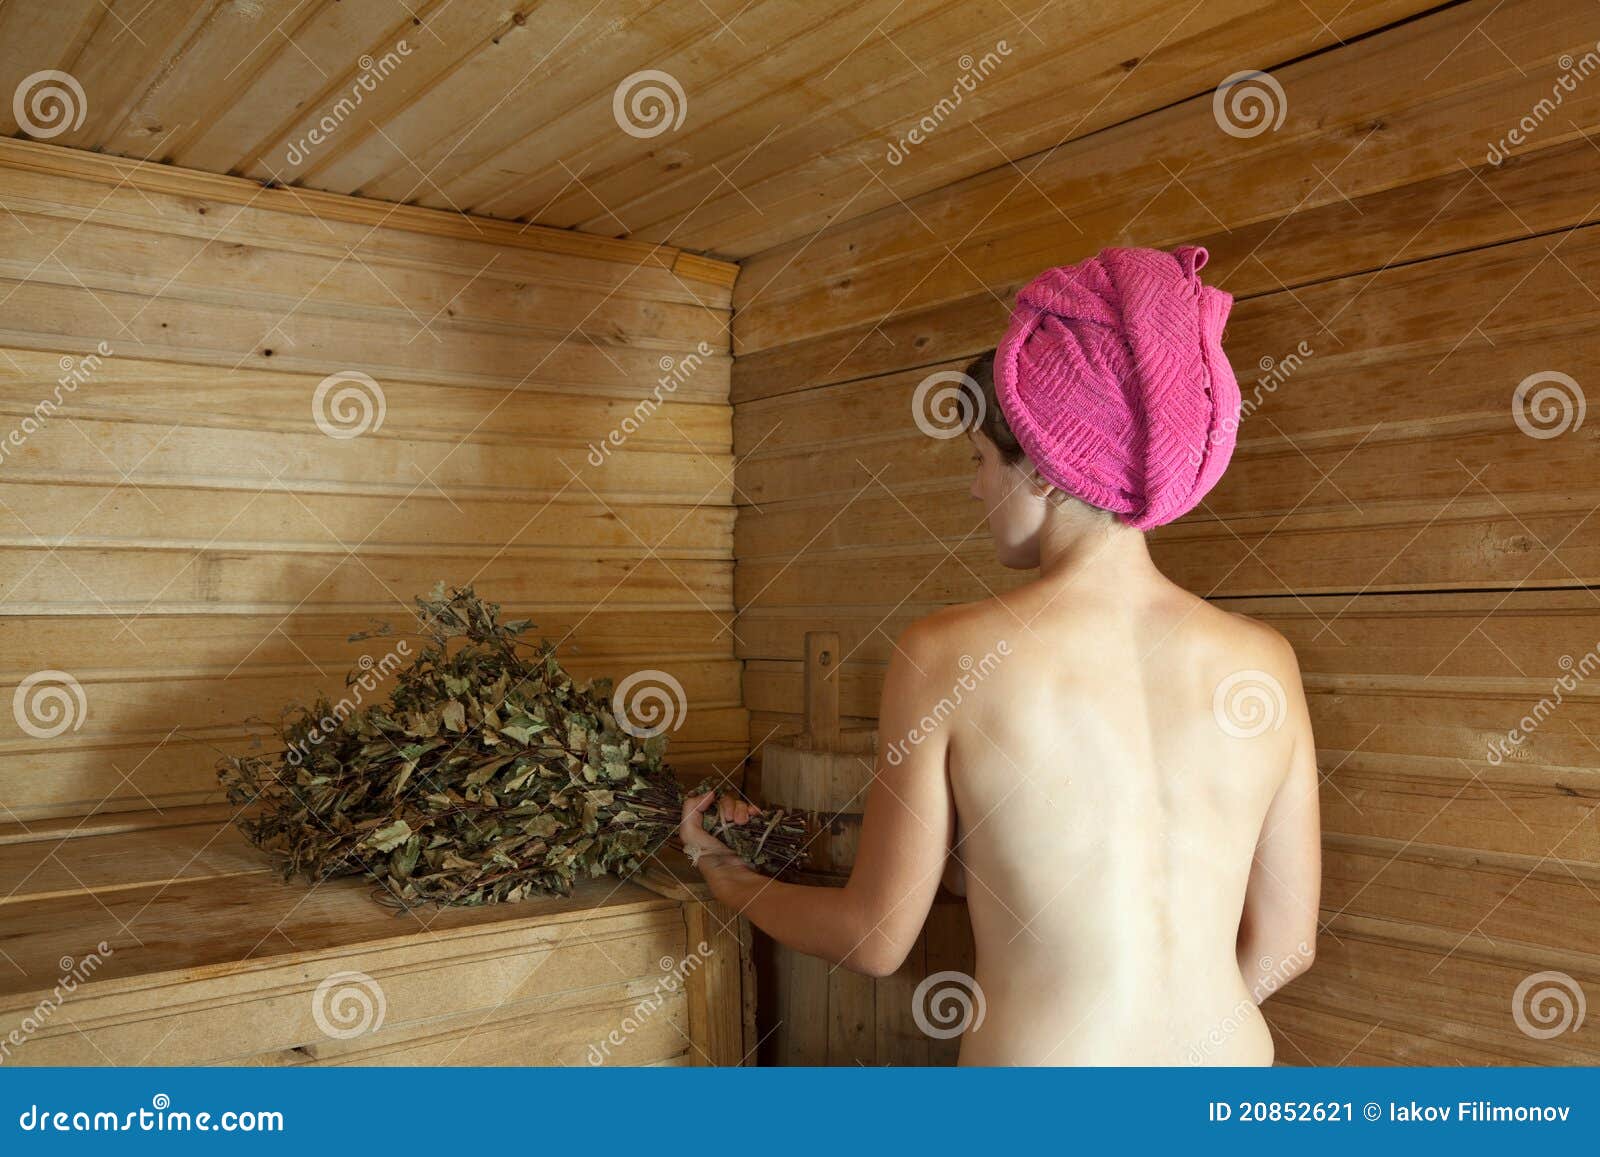 мыться голым в бане сон фото 23